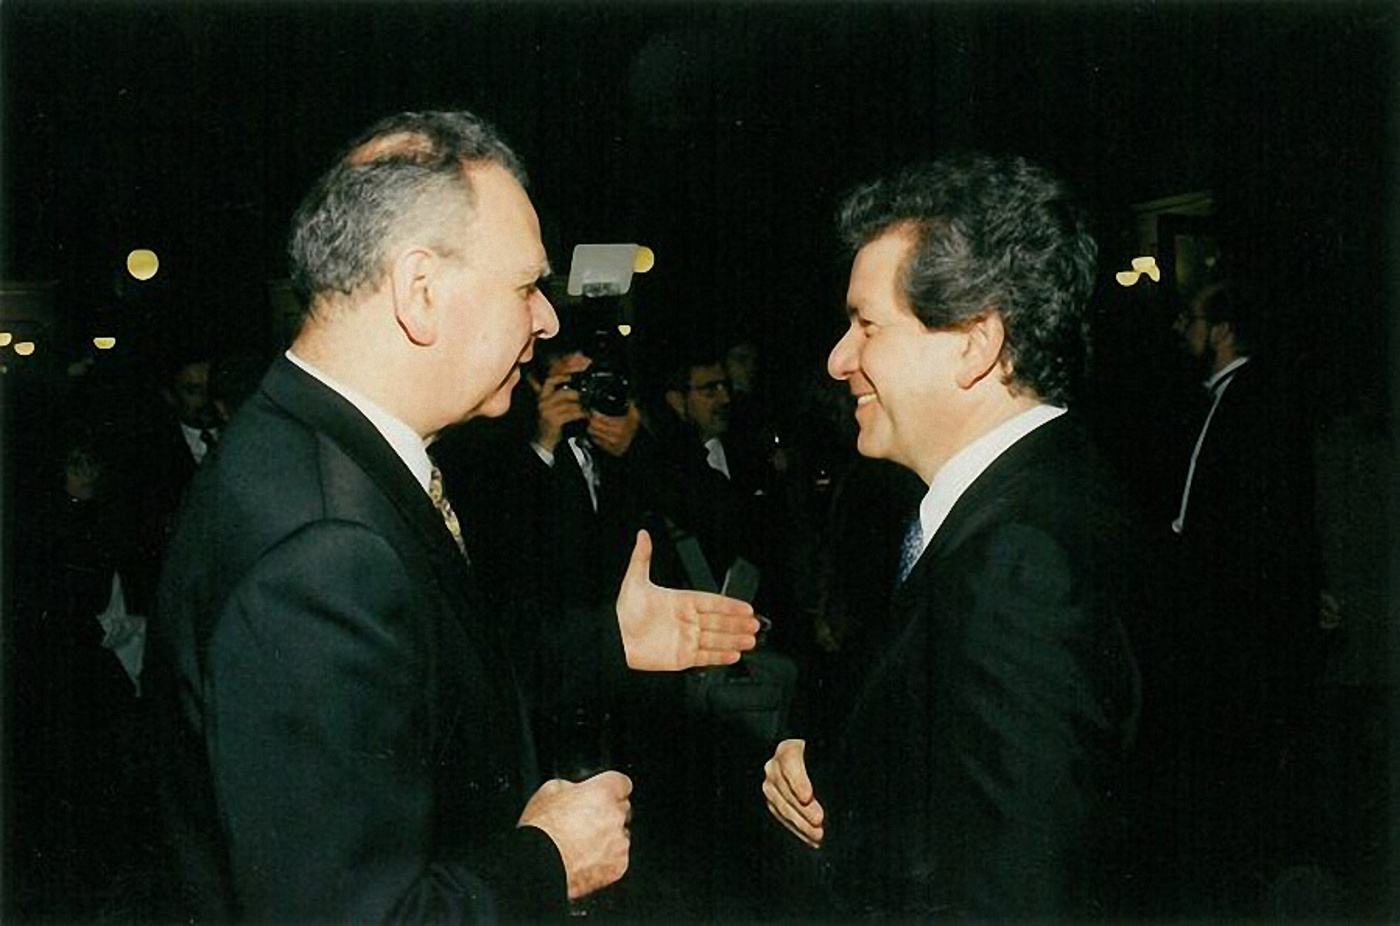 Milan Uhde, tehdejší 1. předseda parlamentu ČR, a Jiří Bělohlávek